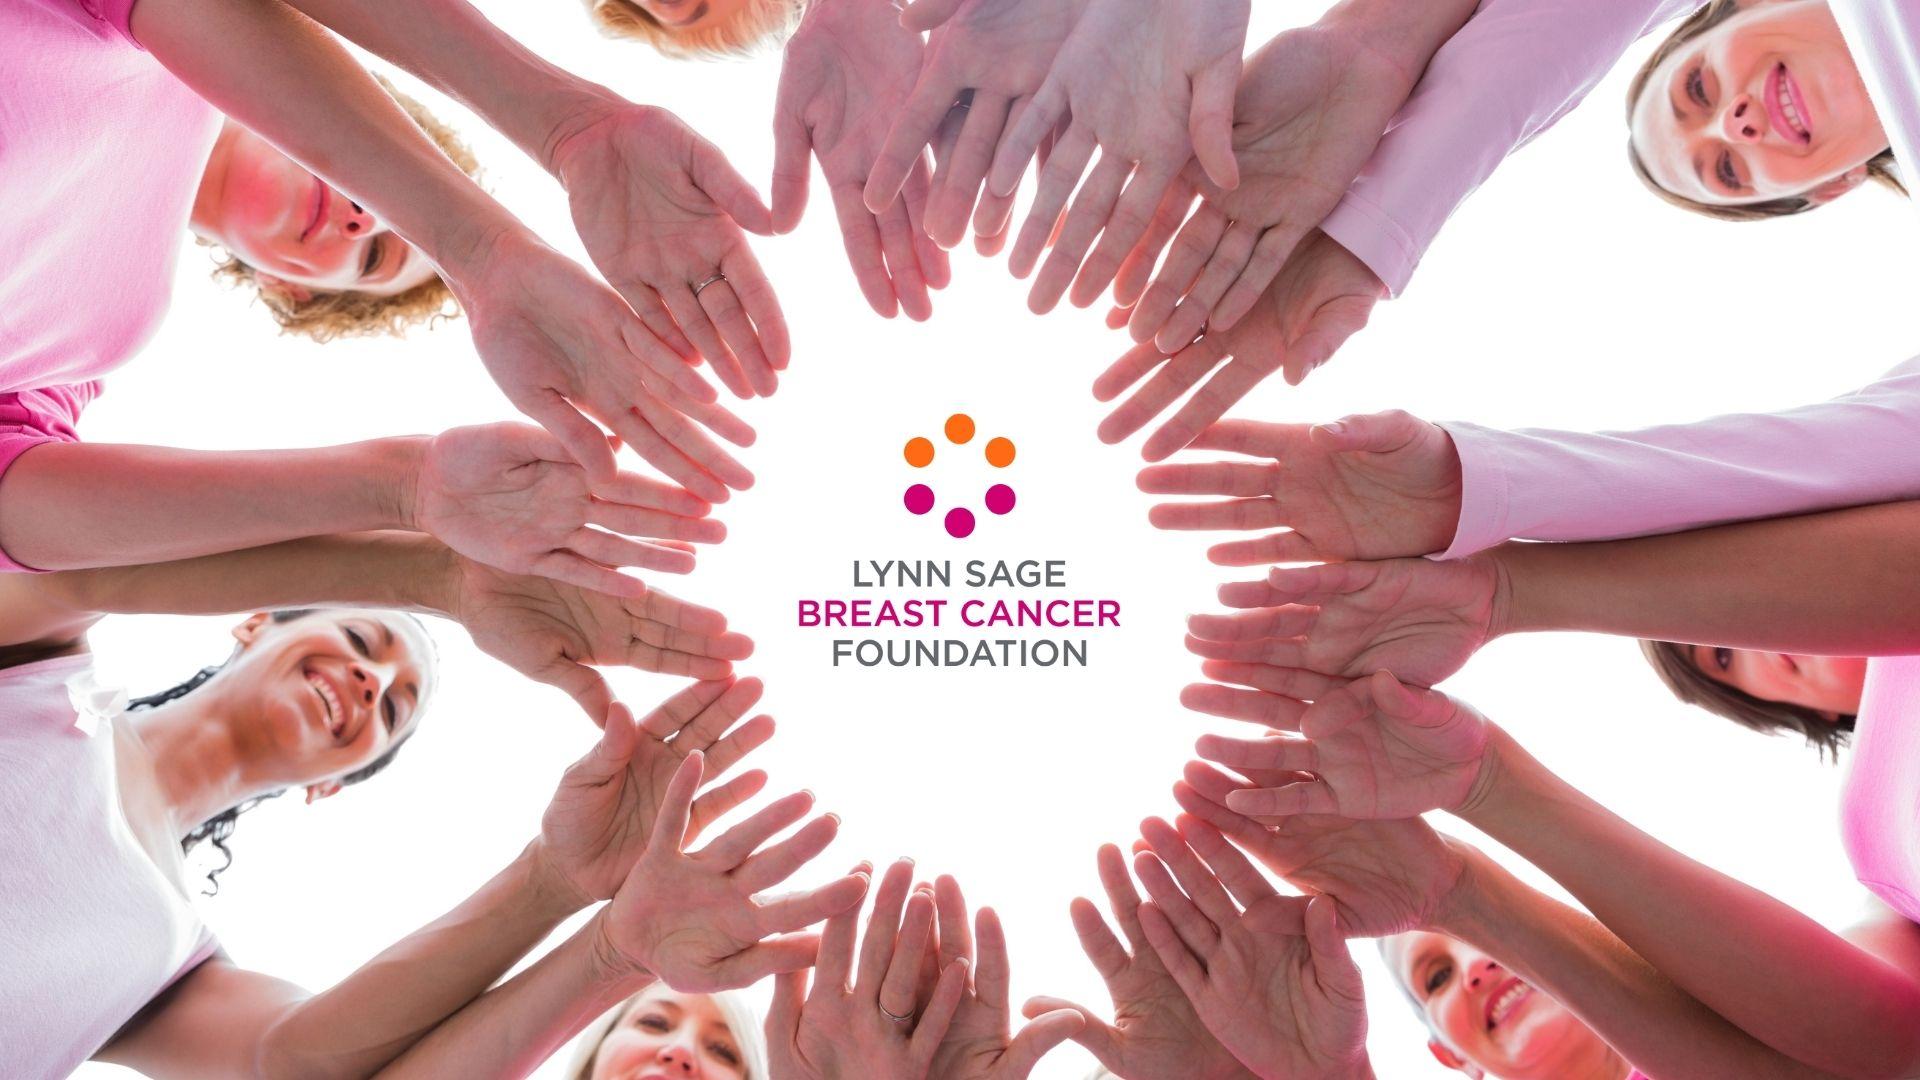 Support Lynn Sage Breast Cancer Foundation